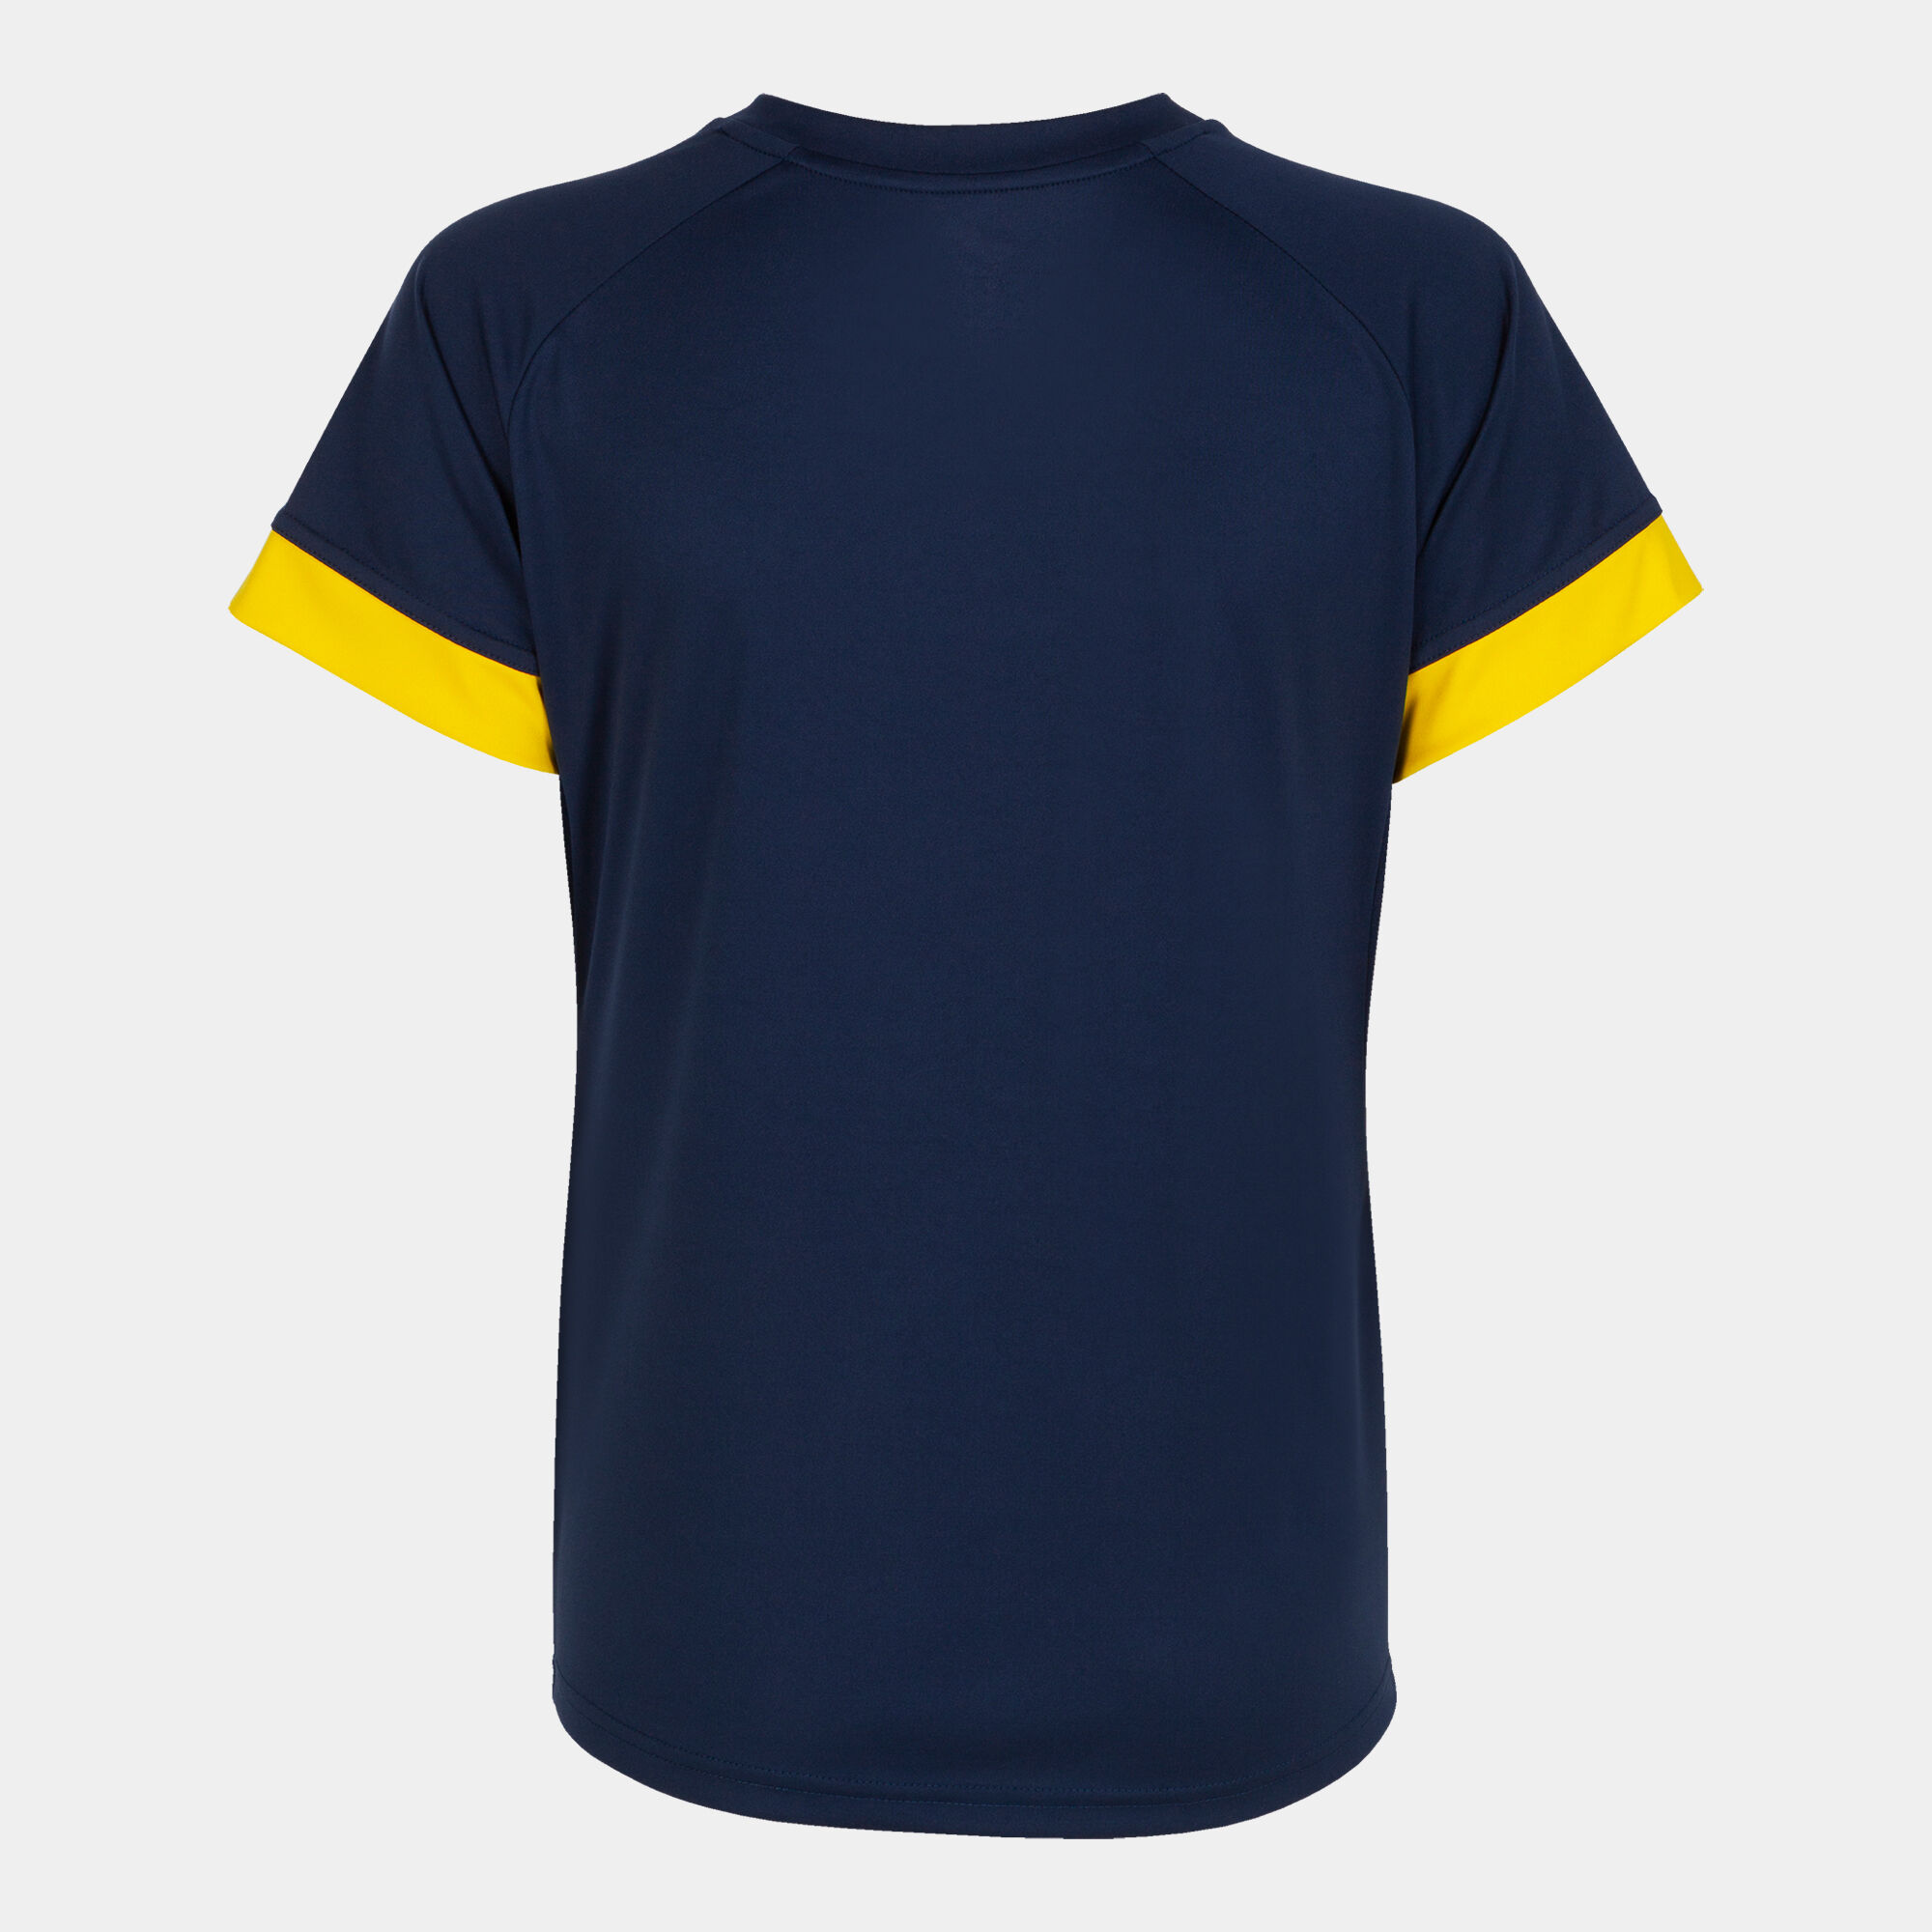 Camiseta manga corta mujer Supernova III marino amarillo